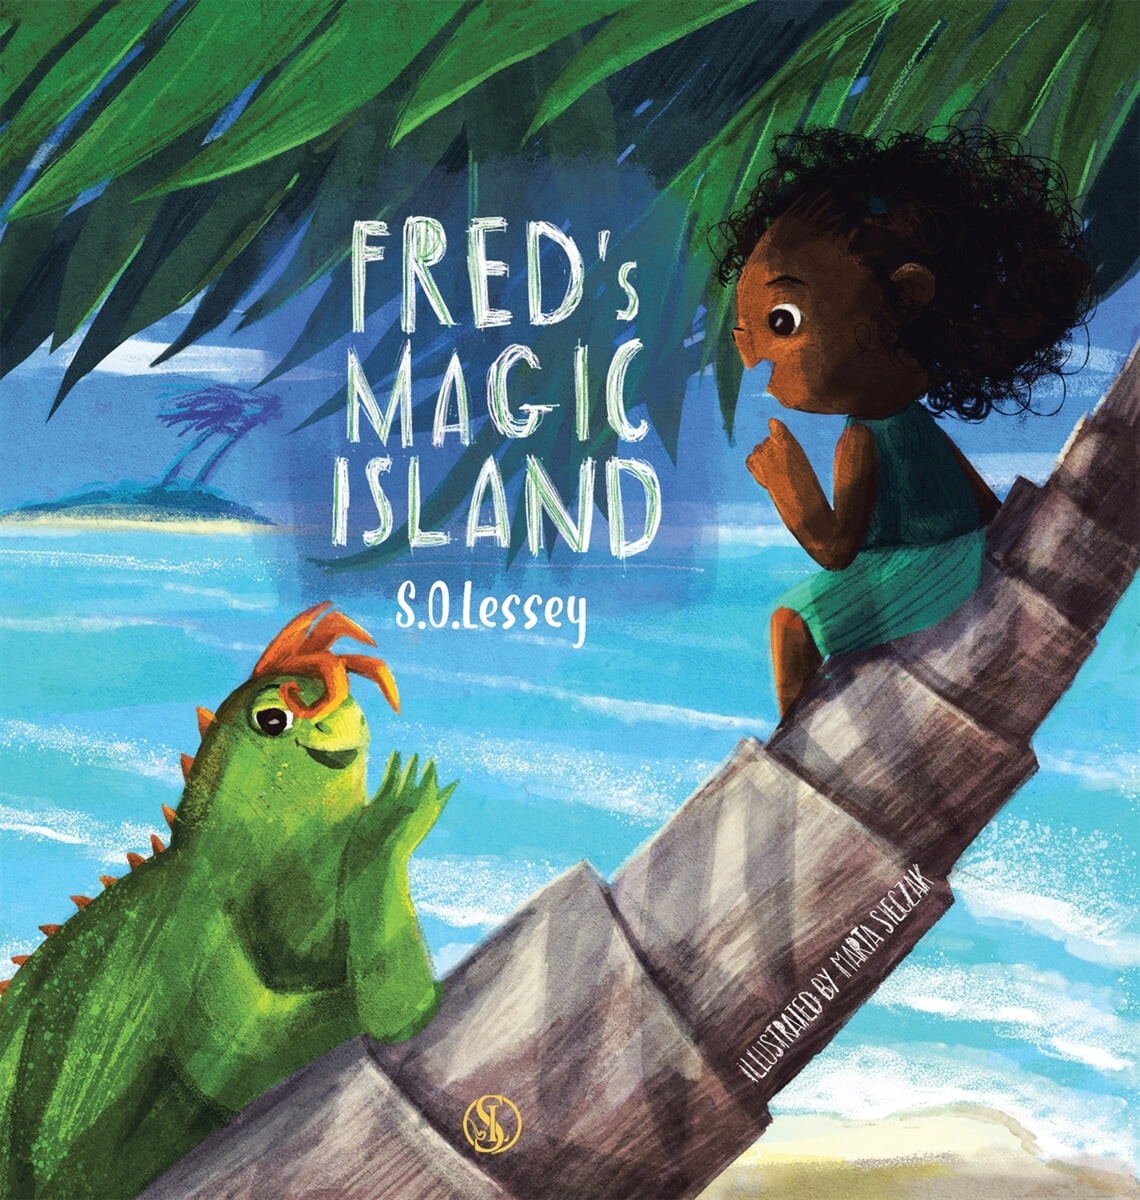 Fred's magic island